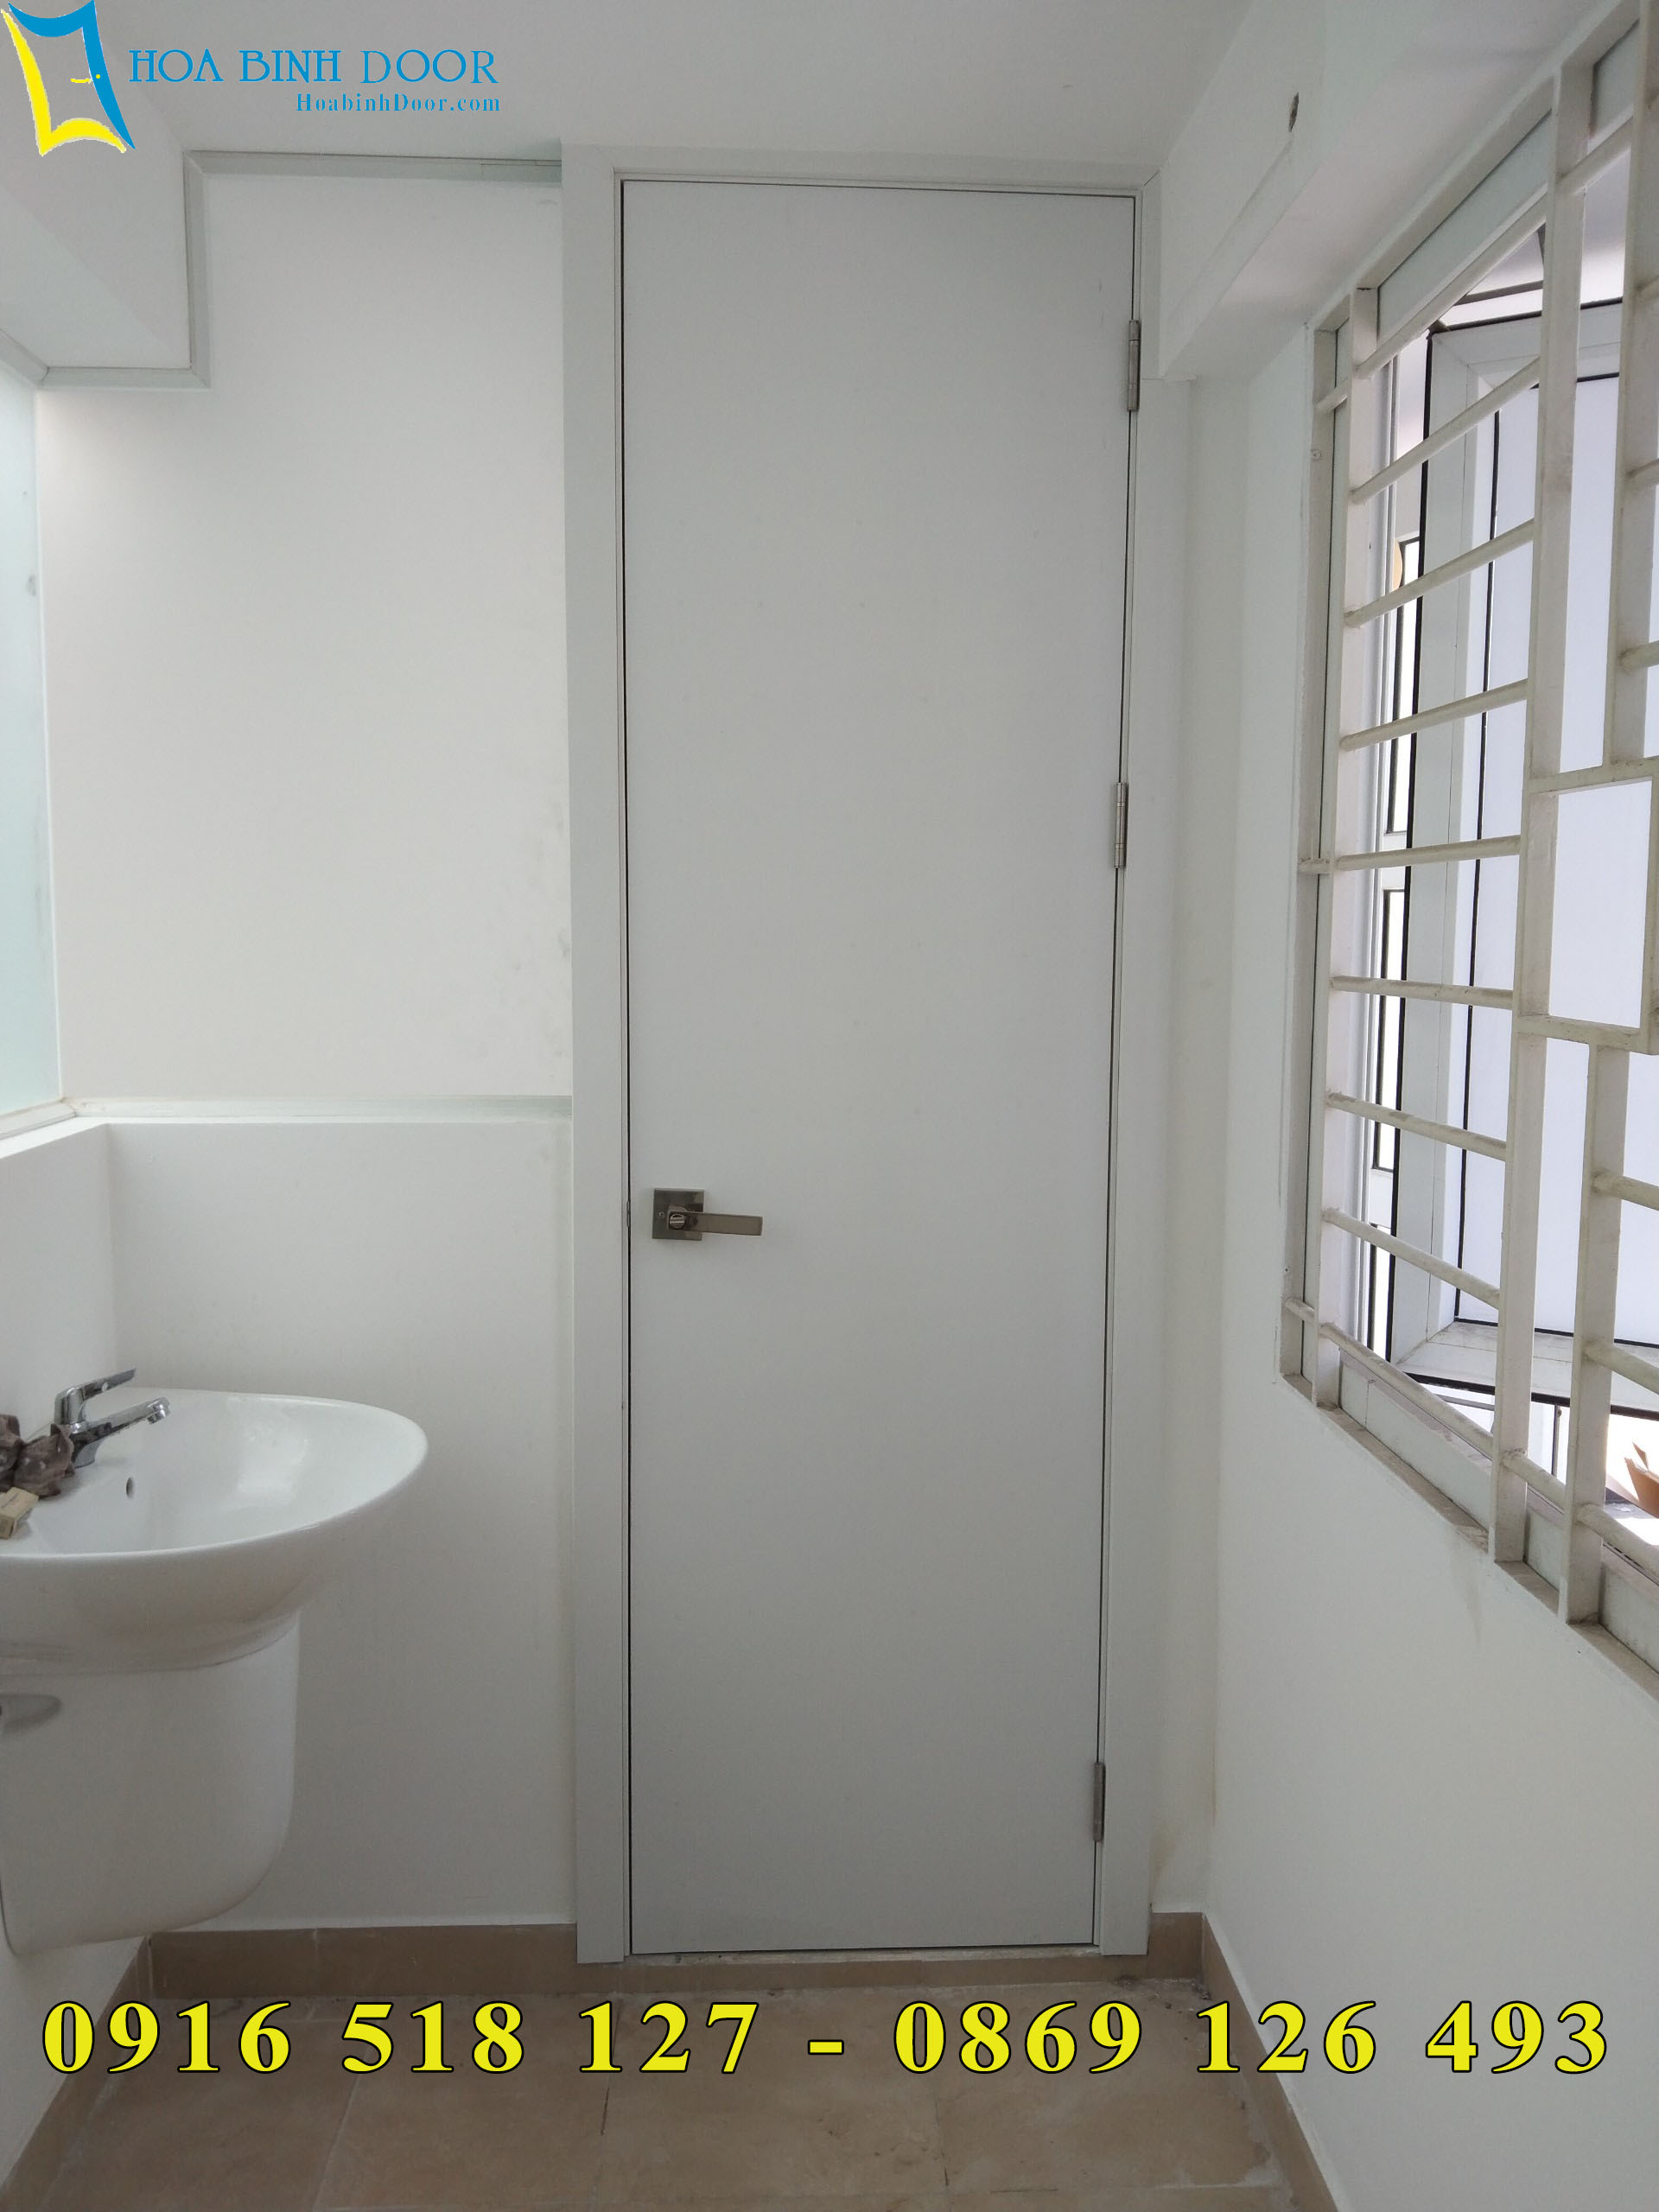 Cửa nhựa ABS cho Chung Cư | Cửa chính, cửa phòng và cửa nhà vệ sinh